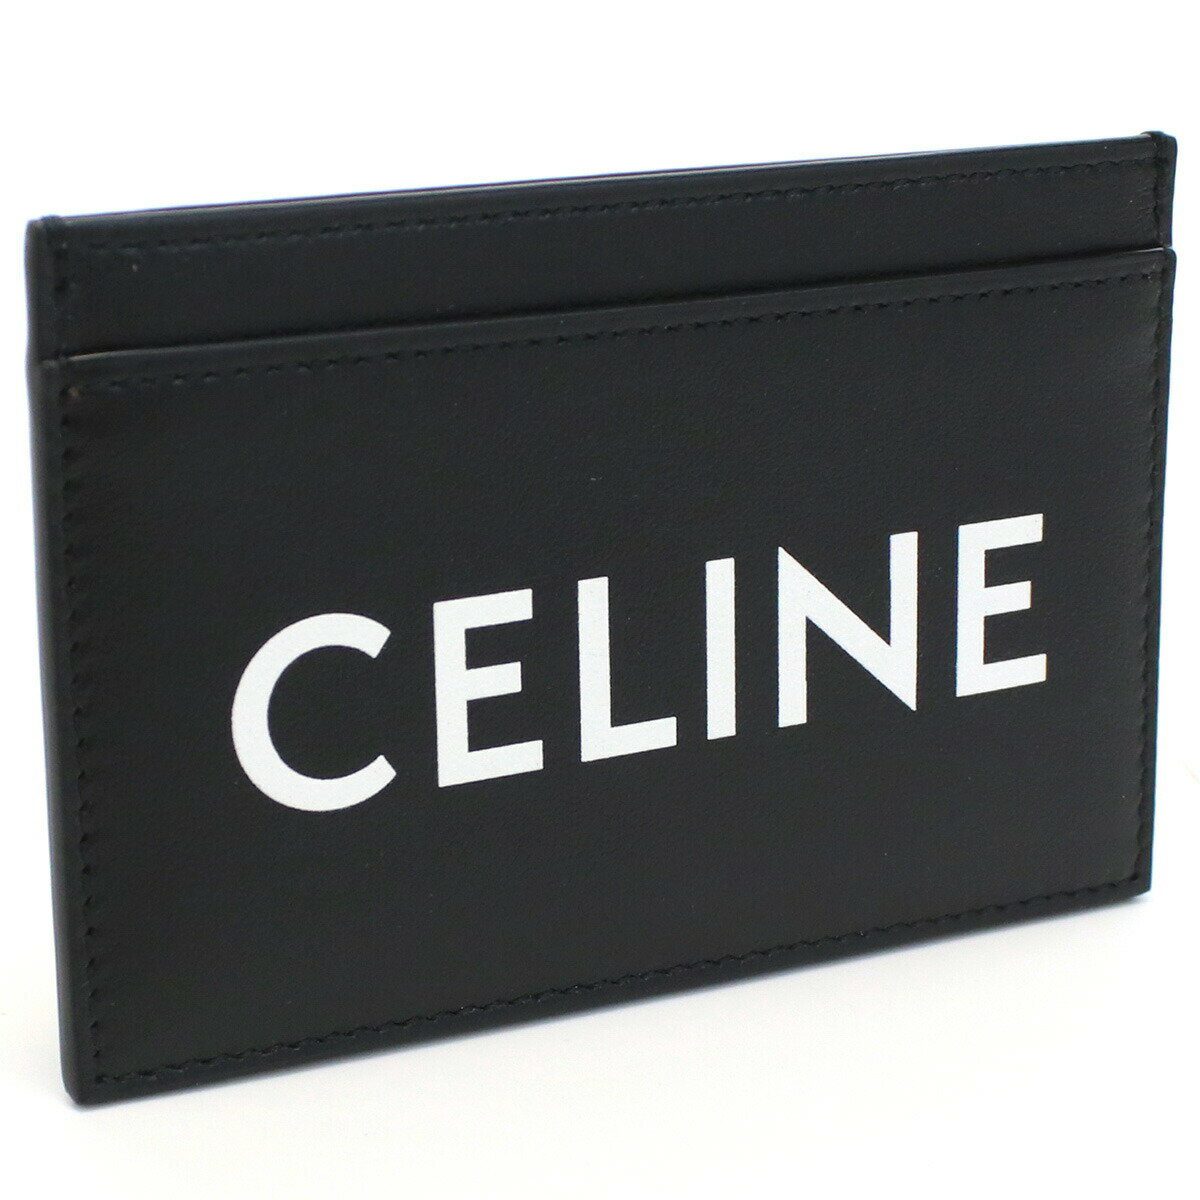 セリーヌ セリーヌ CELINE 10B70 カードケース BLACK ブラック メンズ bh